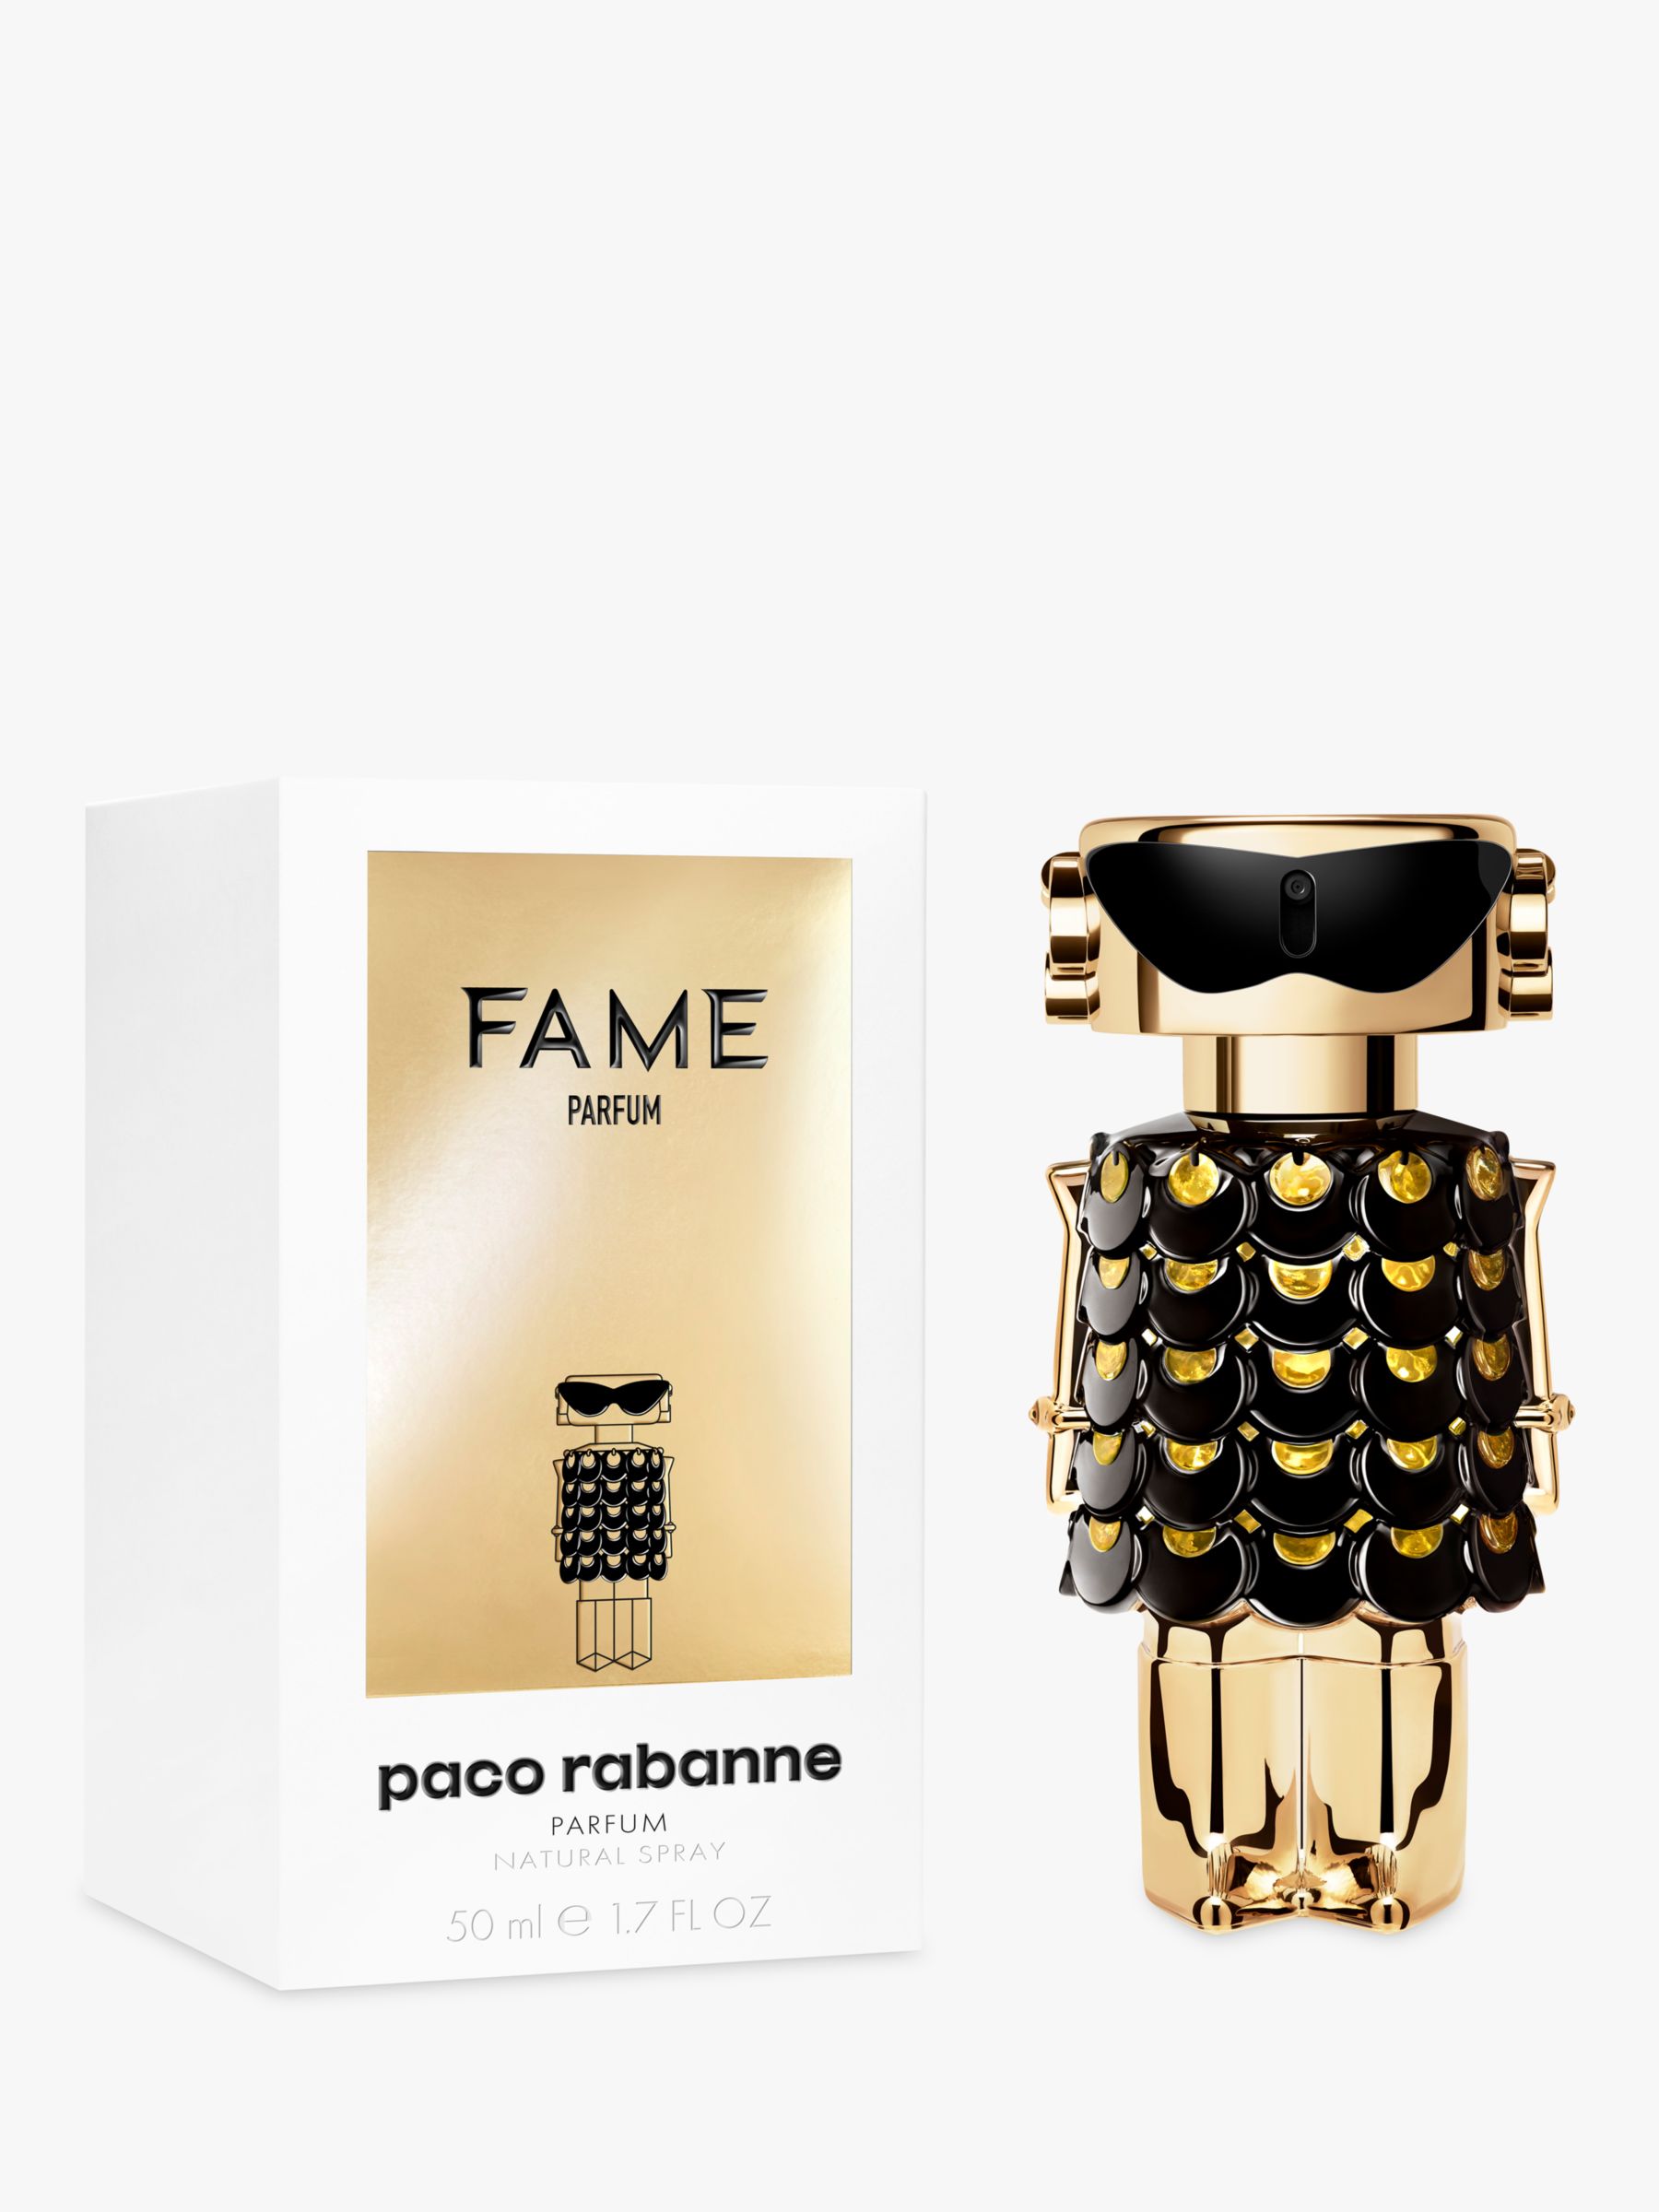 Rabanne FAME Parfum, 50ml at John Lewis & Partners